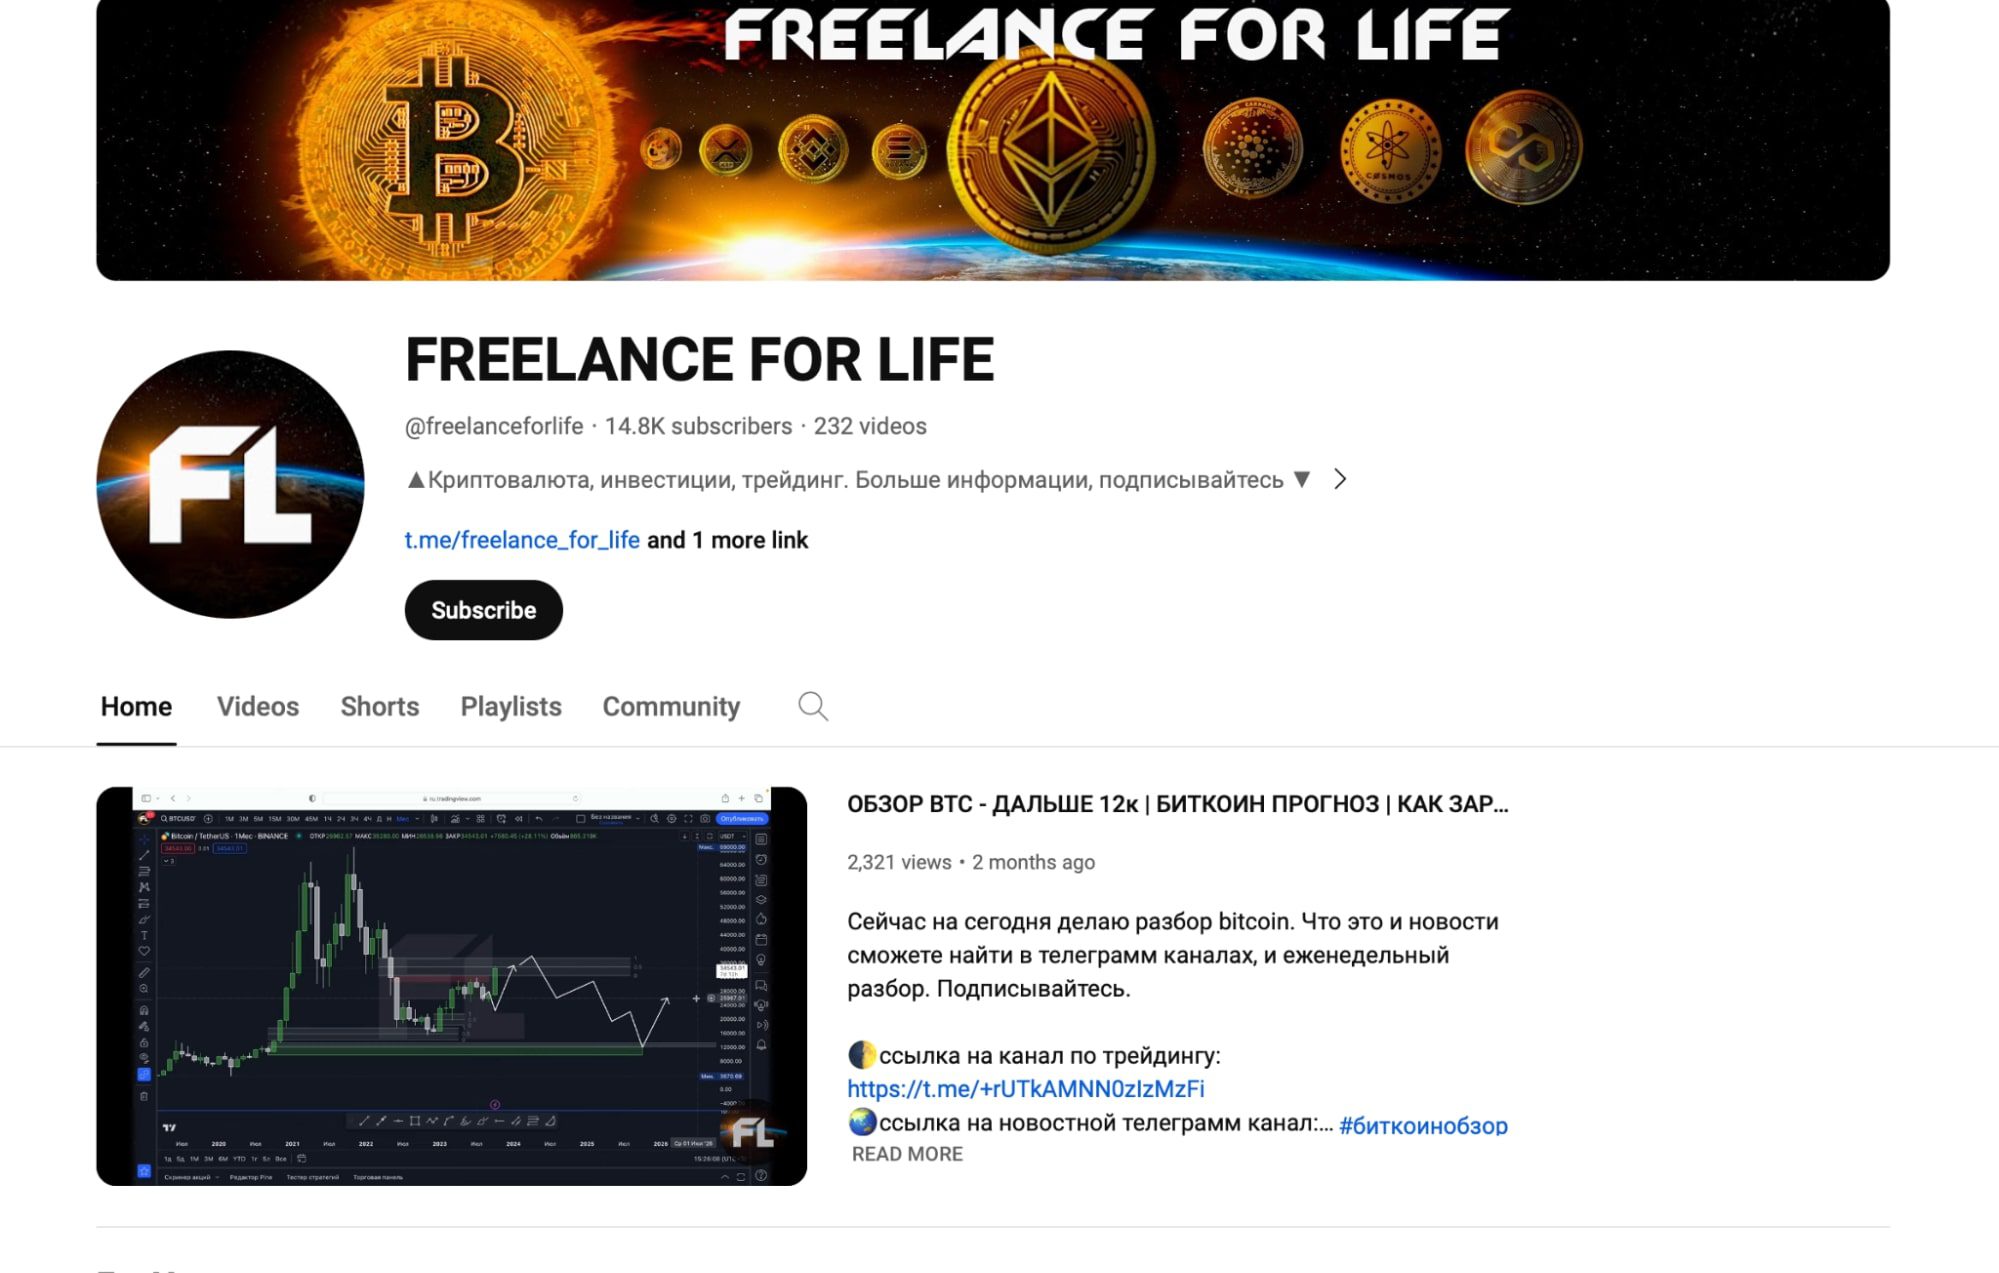 Ютуб канал Freelance for life 